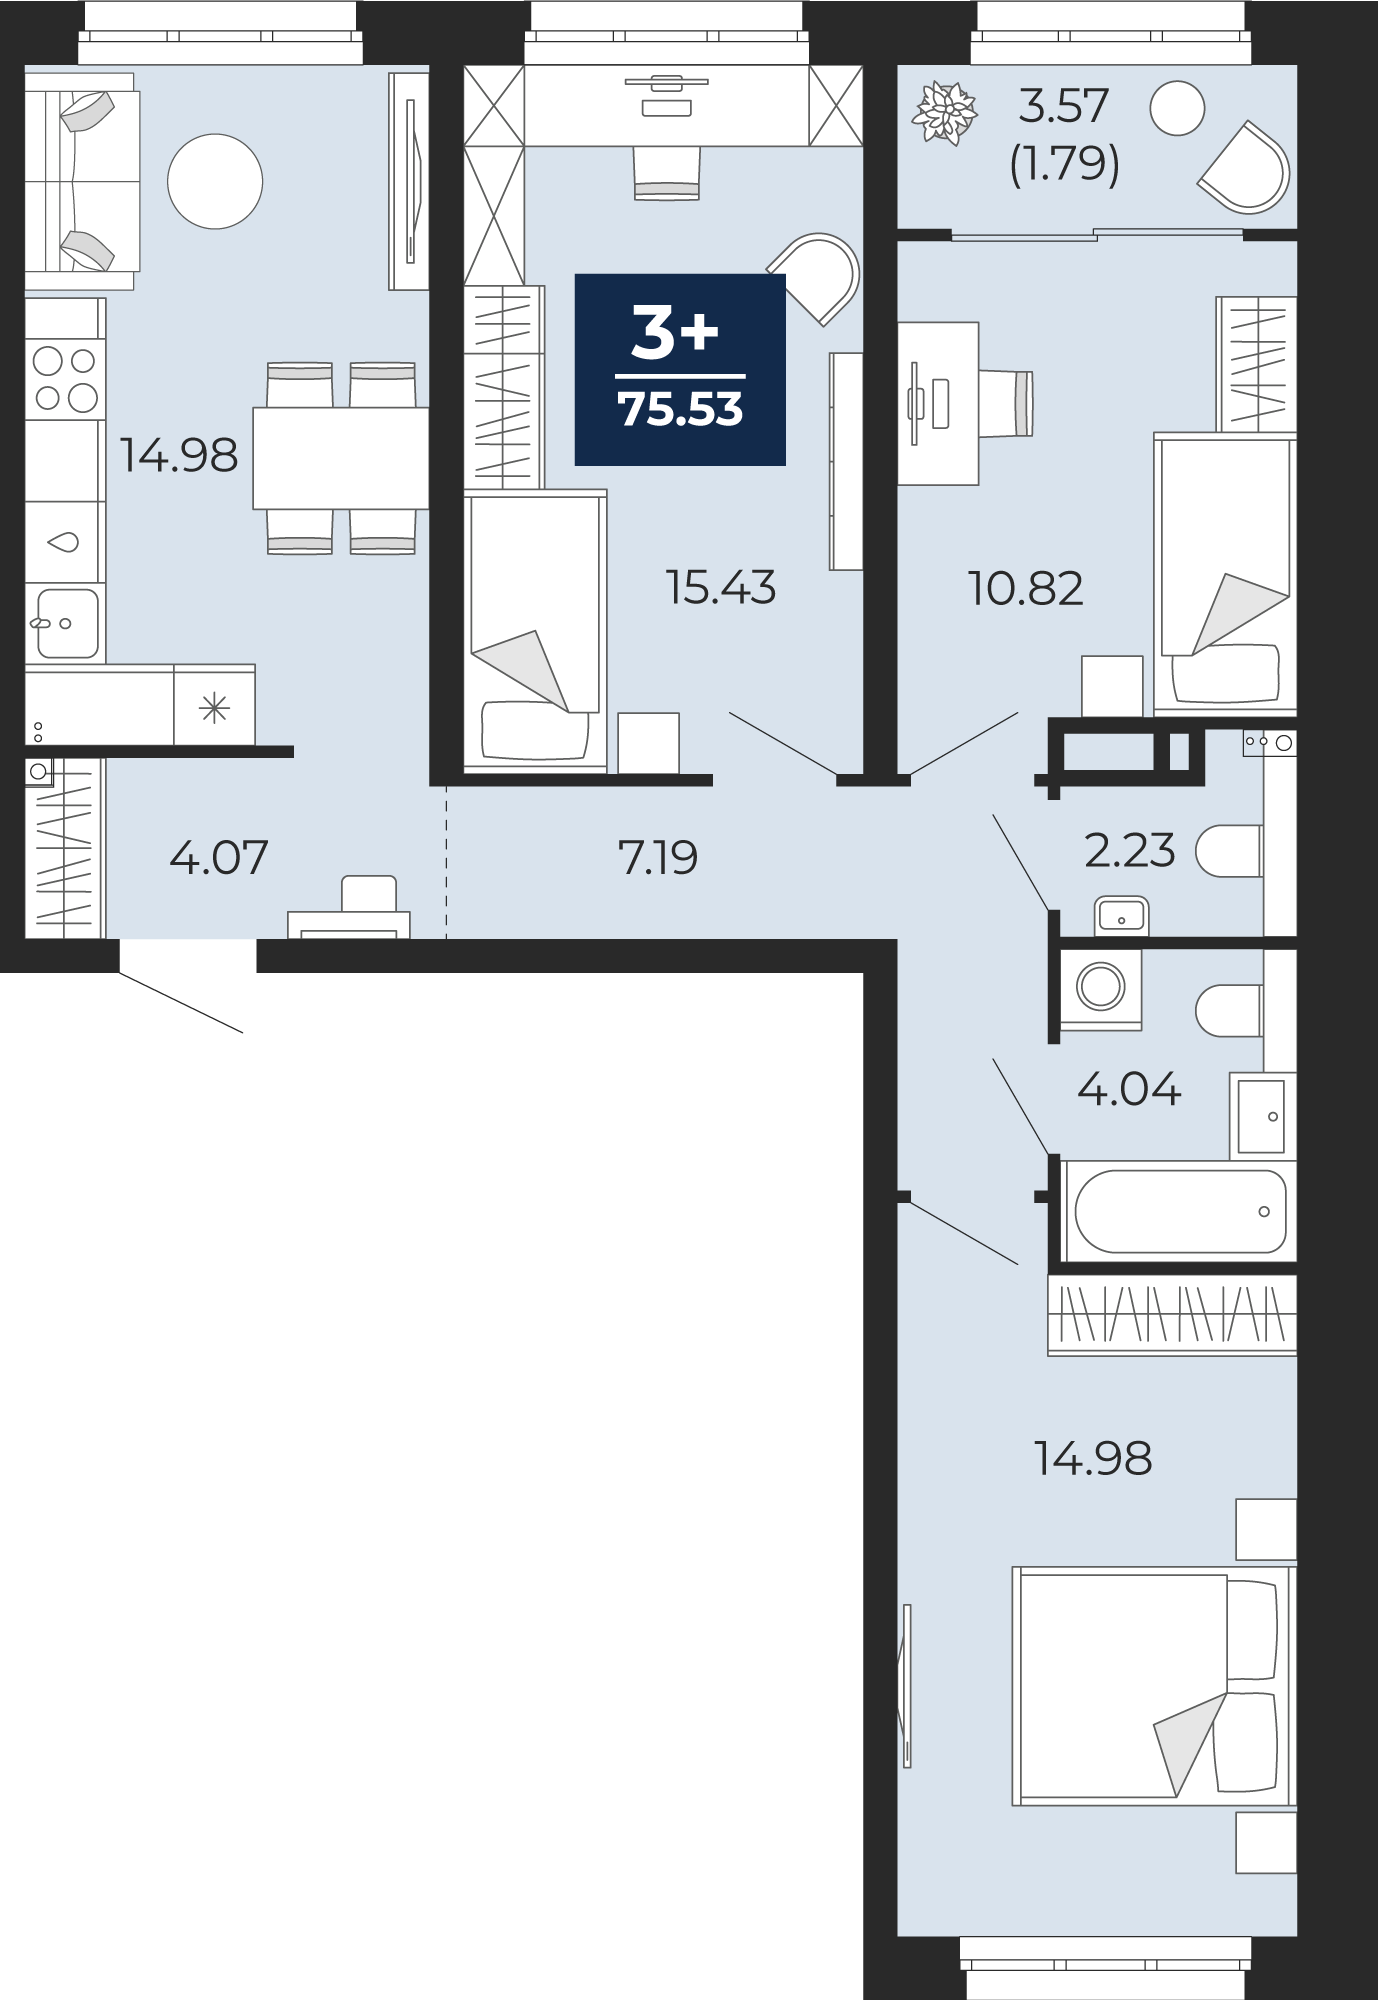 Квартира № 53, 3-комнатная, 75.53 кв. м, 12 этаж